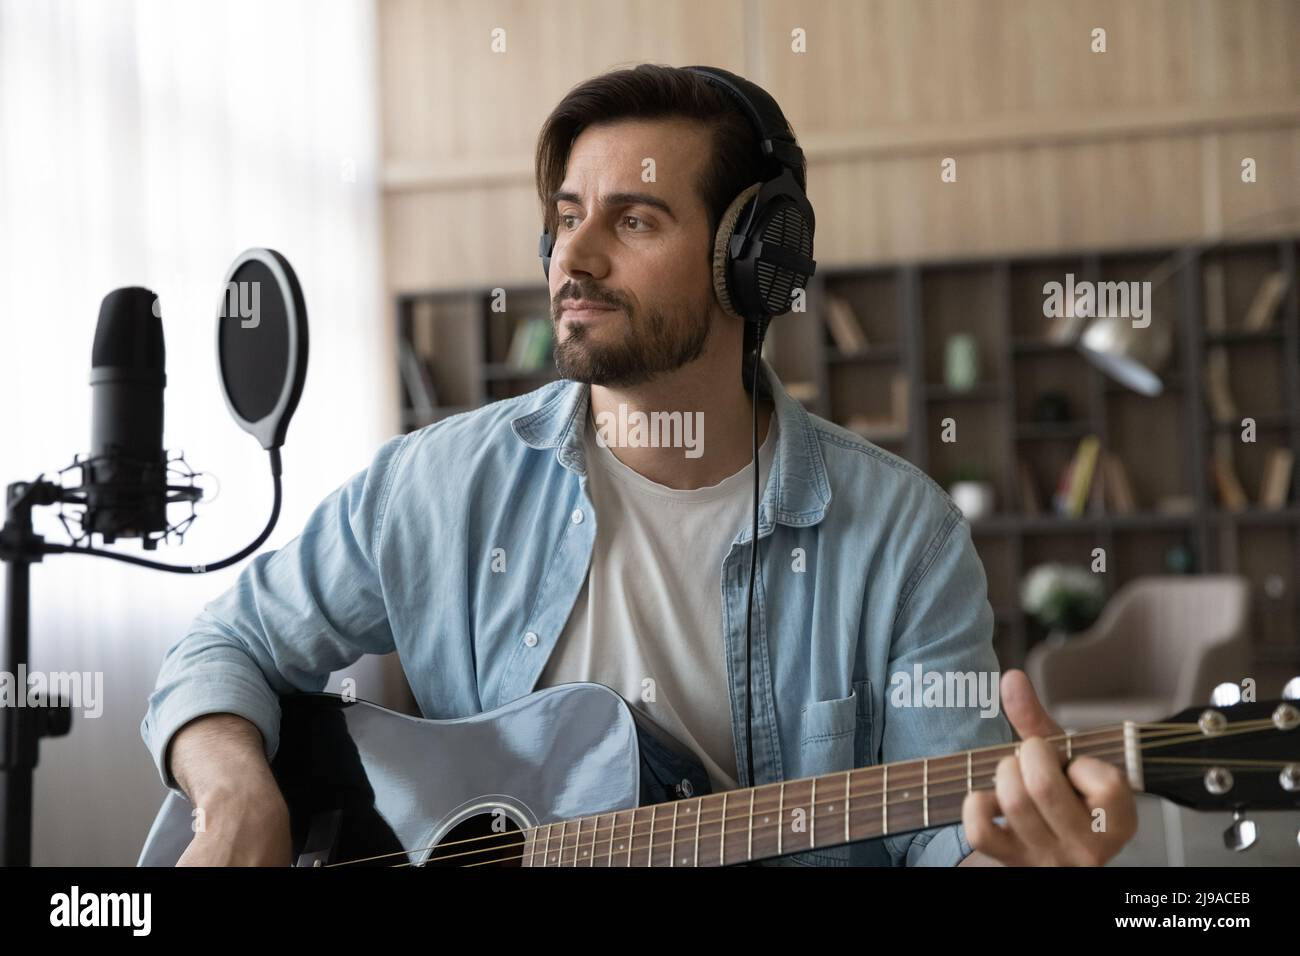 Inspired man singer in earphones hold guitar work on album Stock Photo